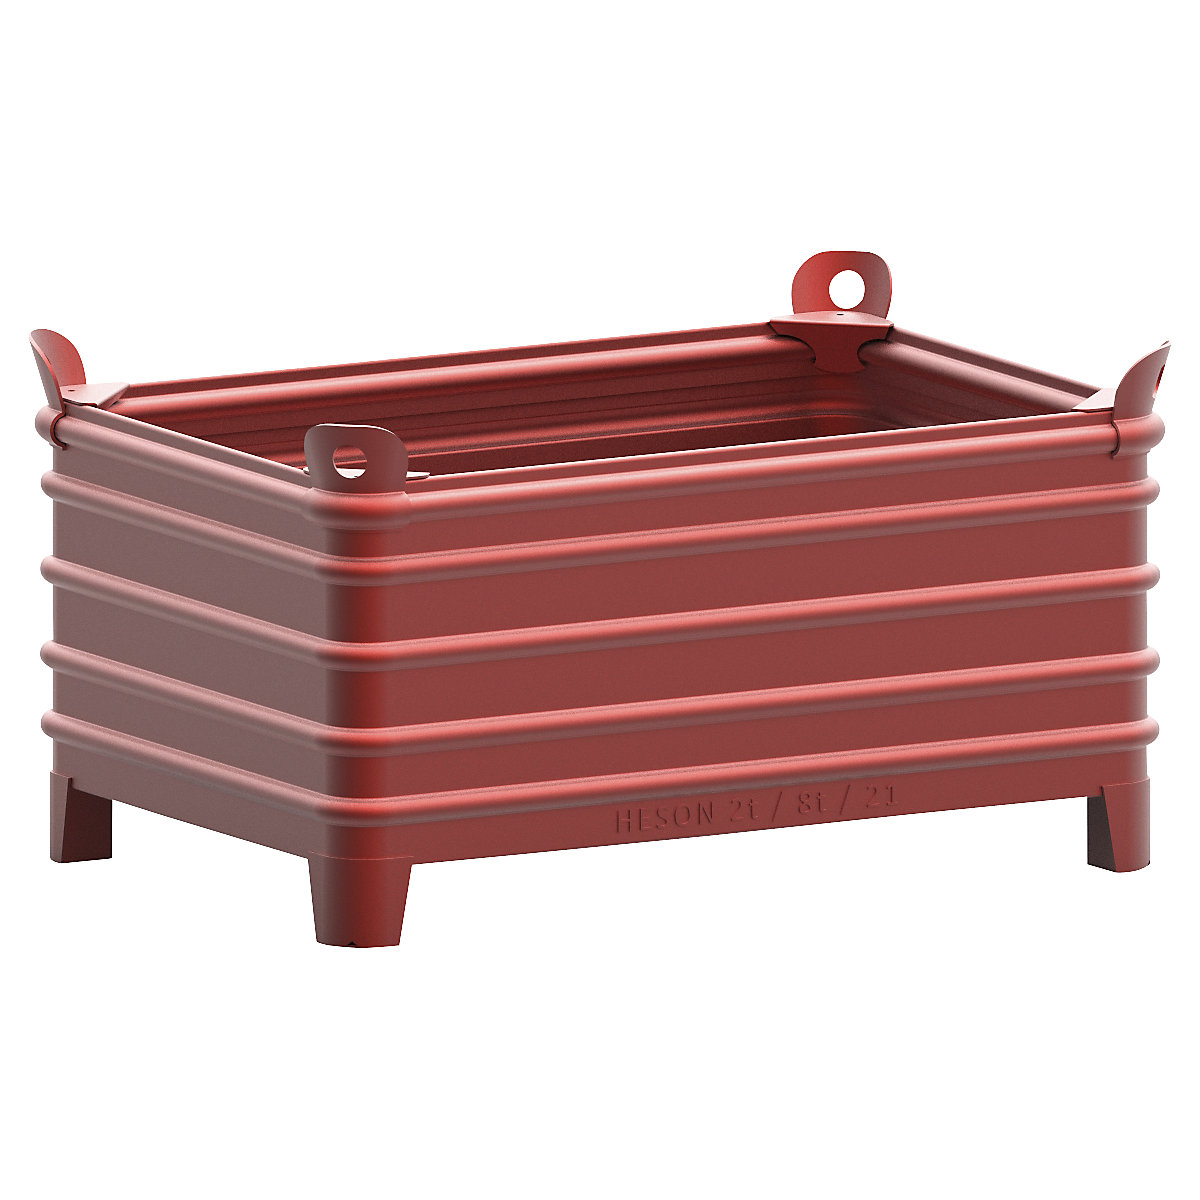 Heson Schwerlast-Stapelbehälter, BxL 800 x 1200 mm, mit Ecktaschen, rot lackiert, ab 1 Stk